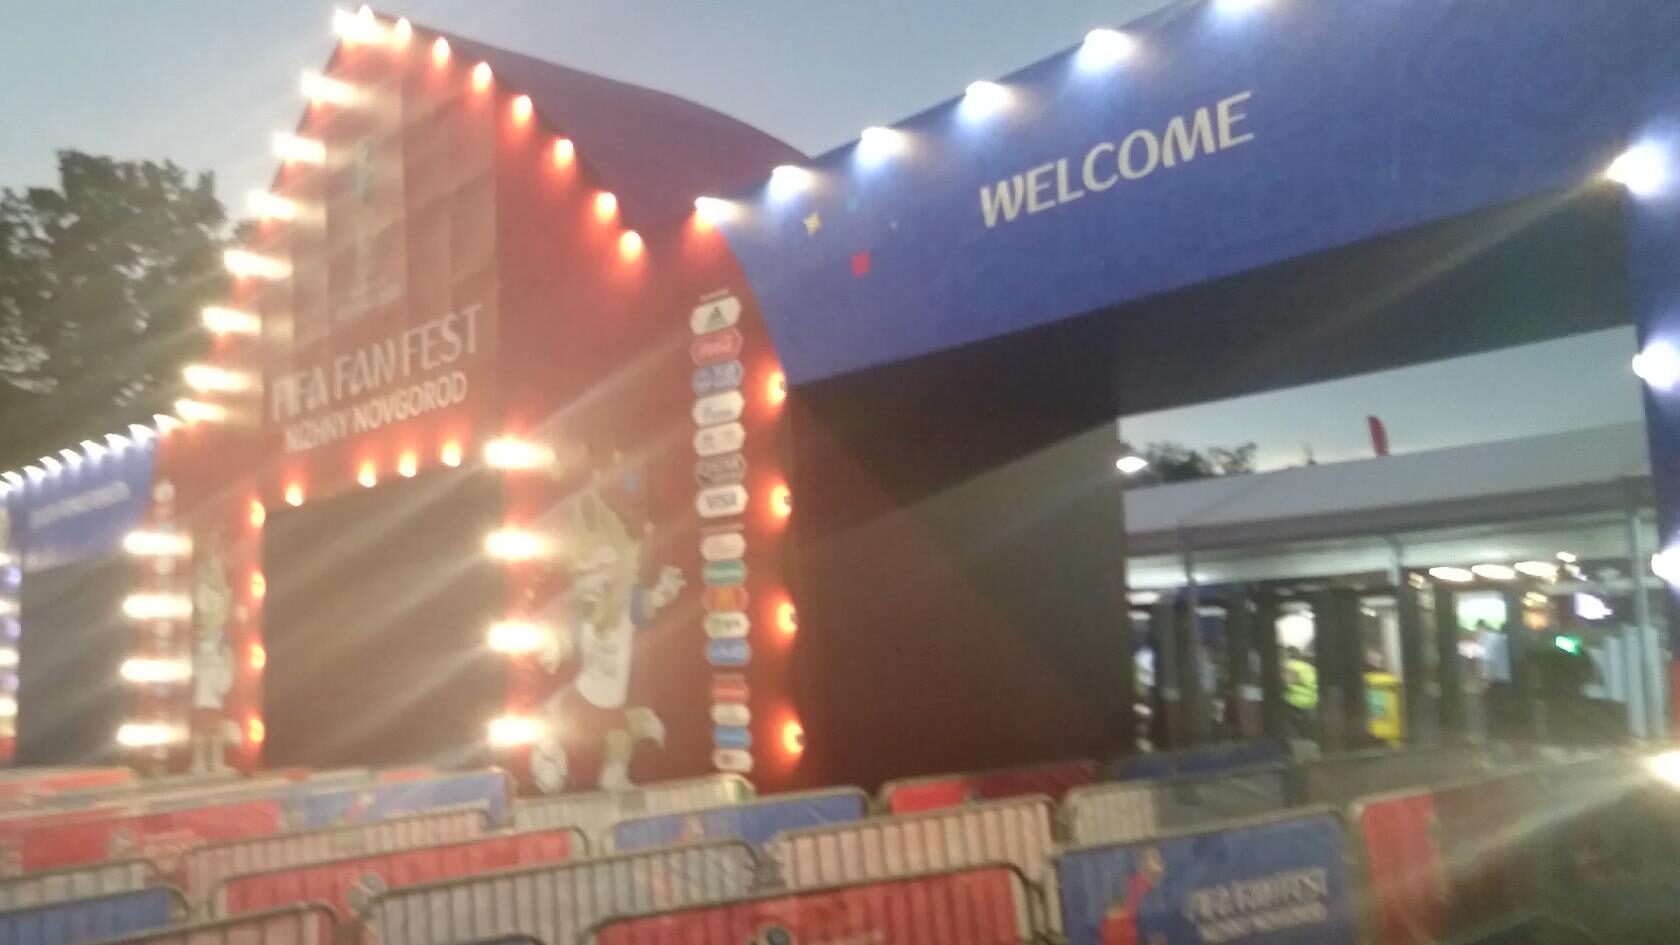 Пришёл на FIFA Fan Fest в Нижнем Новгороде, а трансляцию матча "Бельгия — Япония" прекратили по погодным условиям